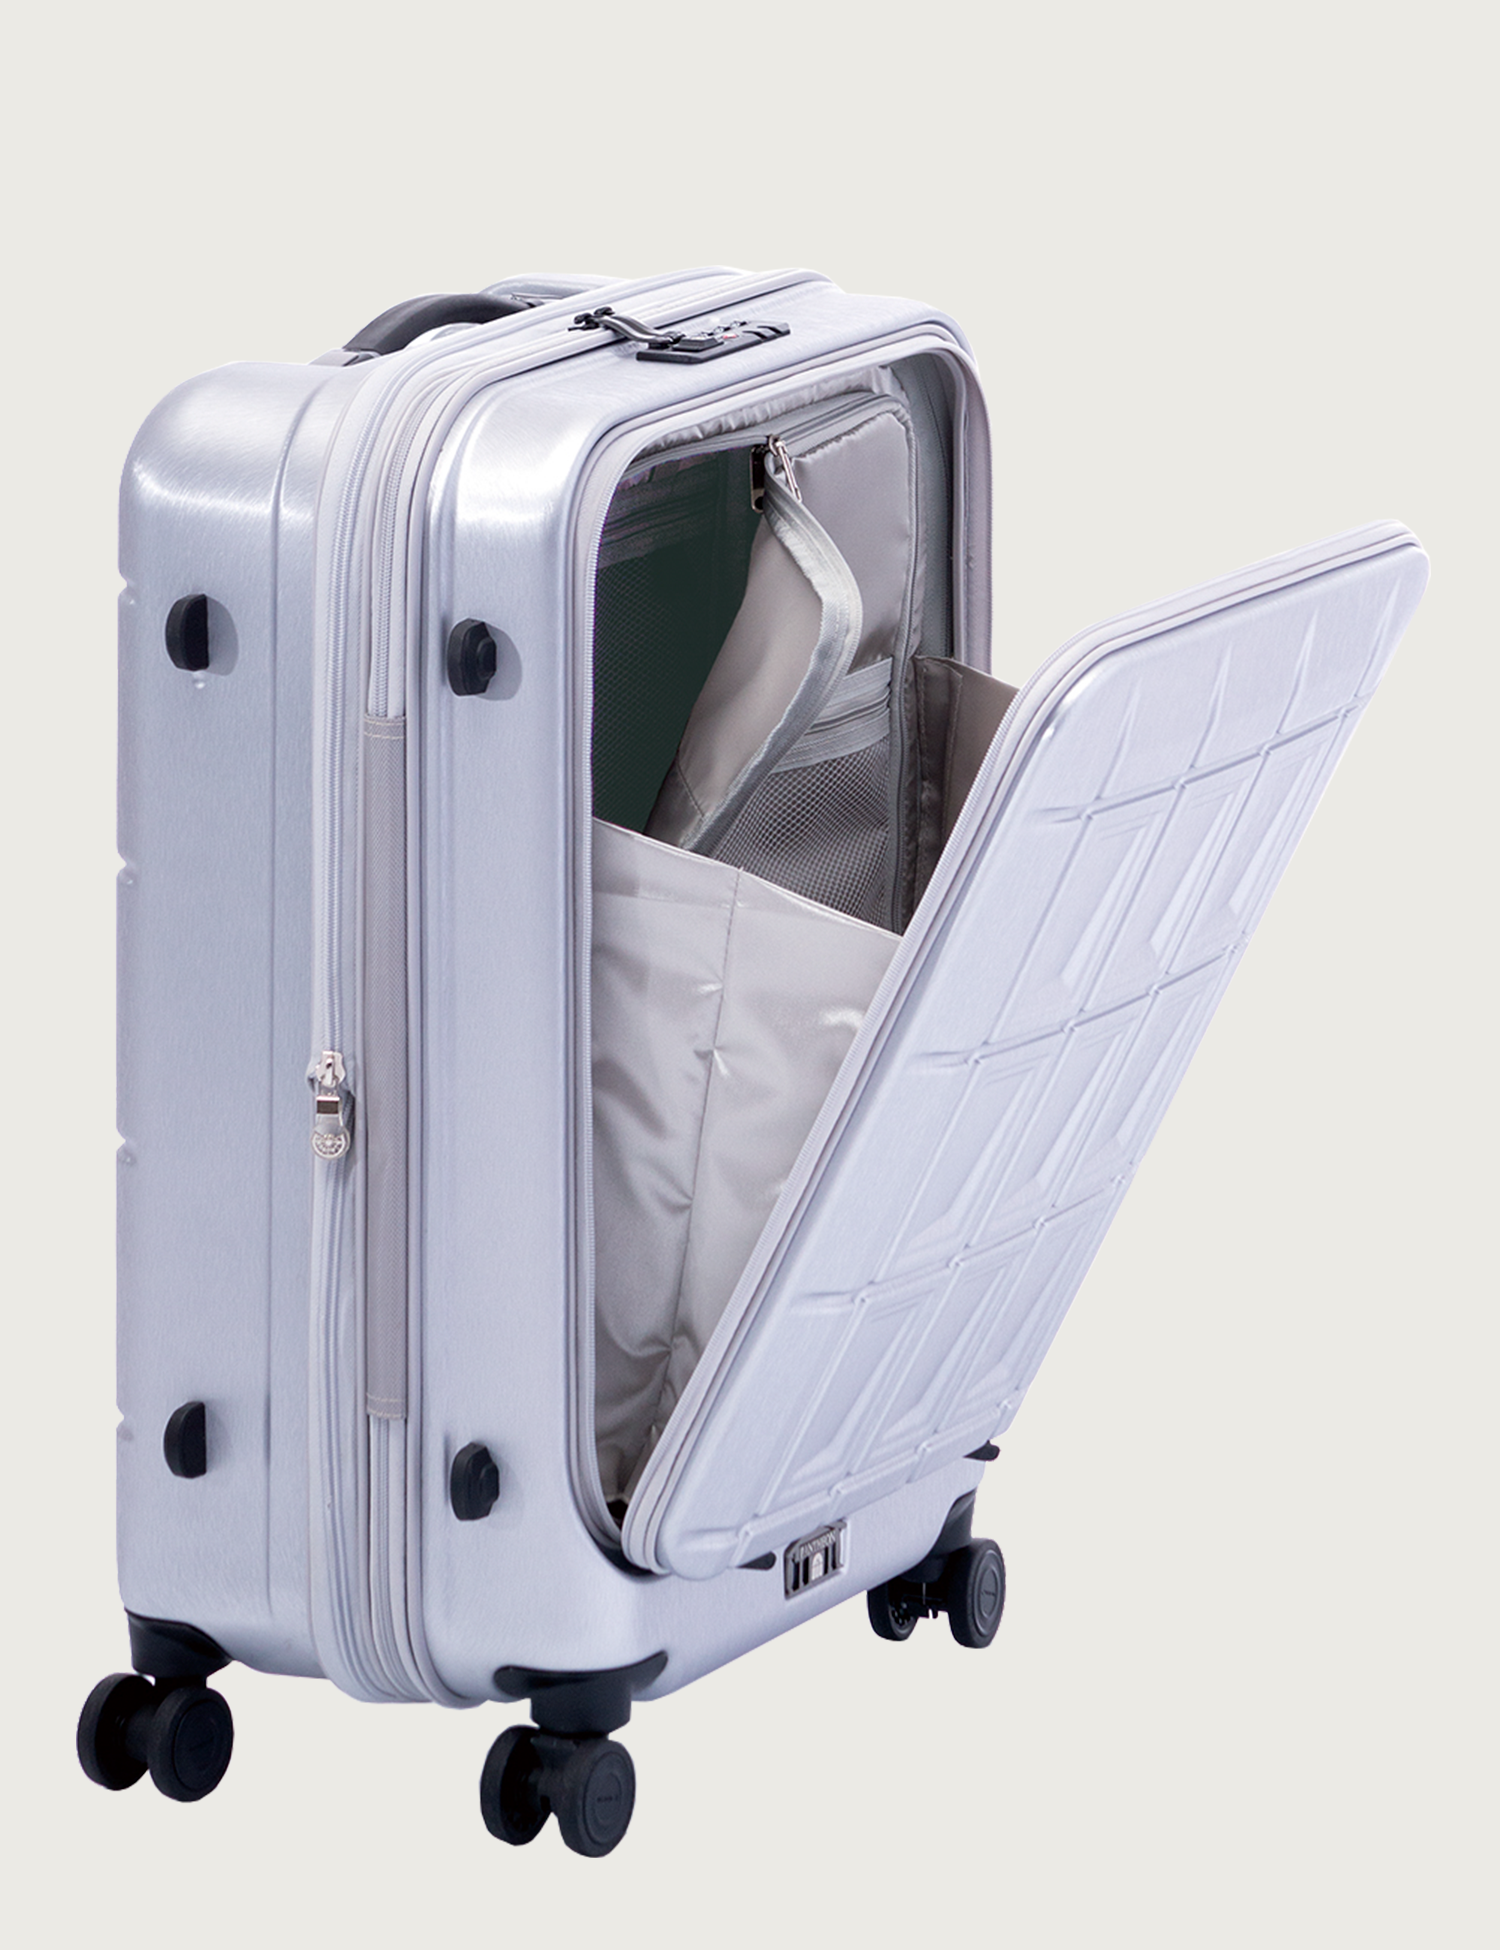 前輪ストッパー フロントオープン機能搭載 Pantheon アジア ラゲージ 公式サイト Asia Luggage